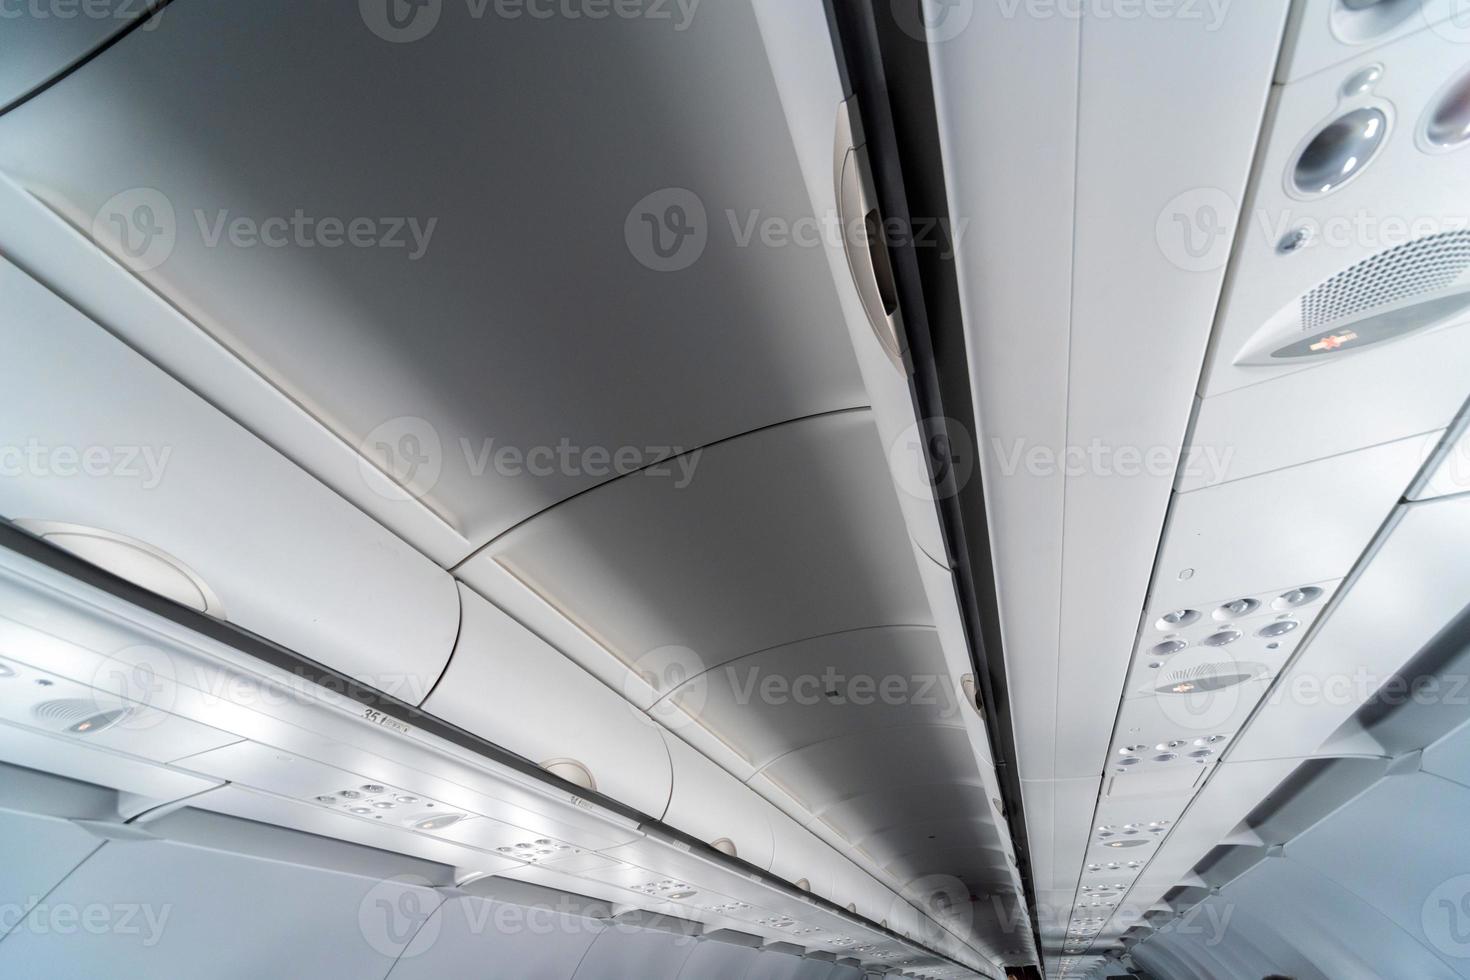 painel de controle do ar condicionado do avião sobre os assentos